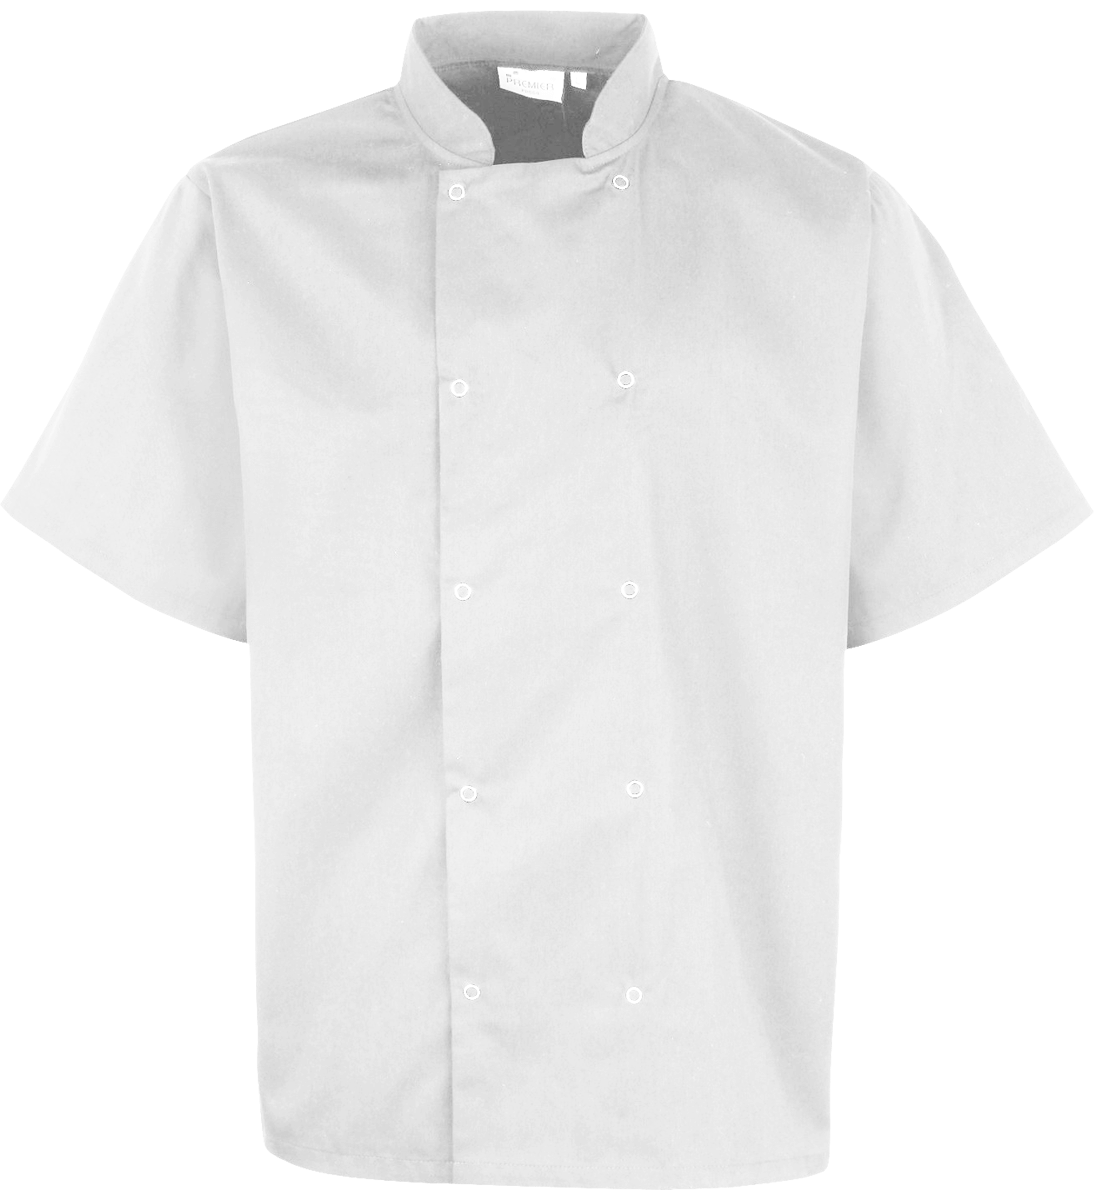 Personalised Chef's Jacket Short Sleeve White